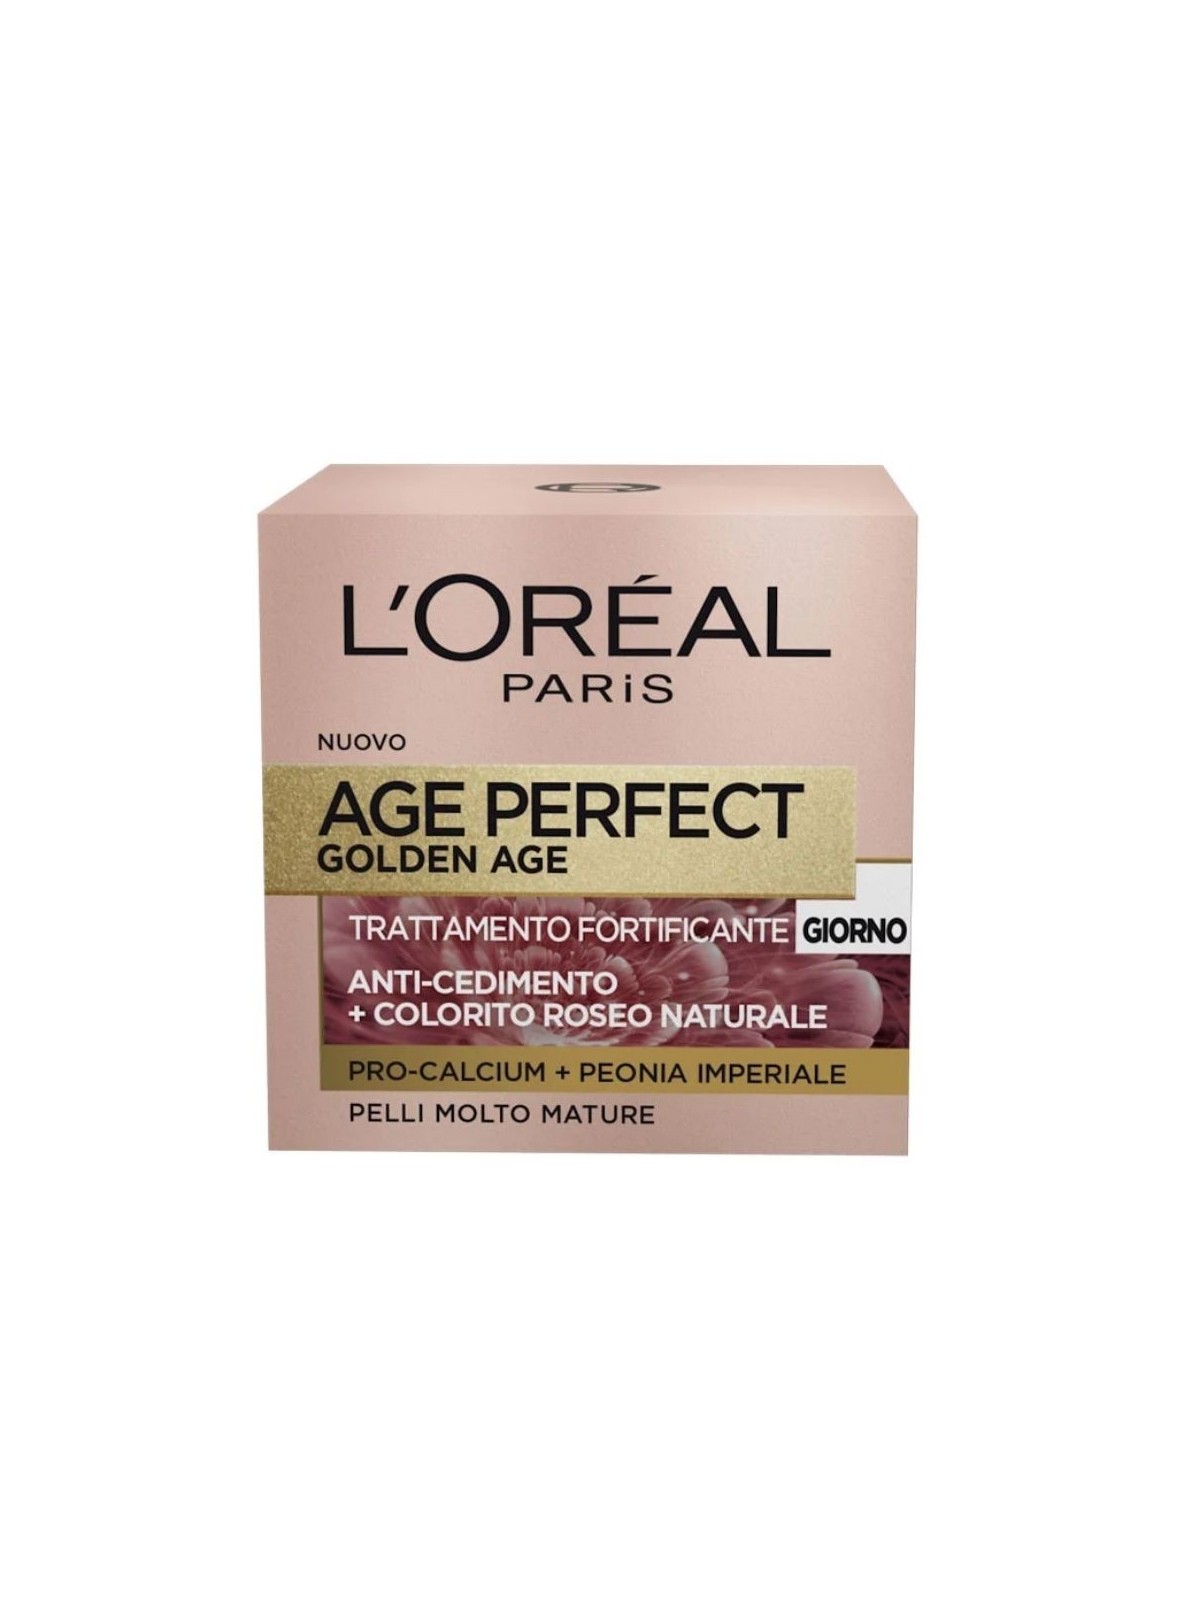 L'Oréal Paris Age Perfect Golden Age Trattamento Fortificante Giorno